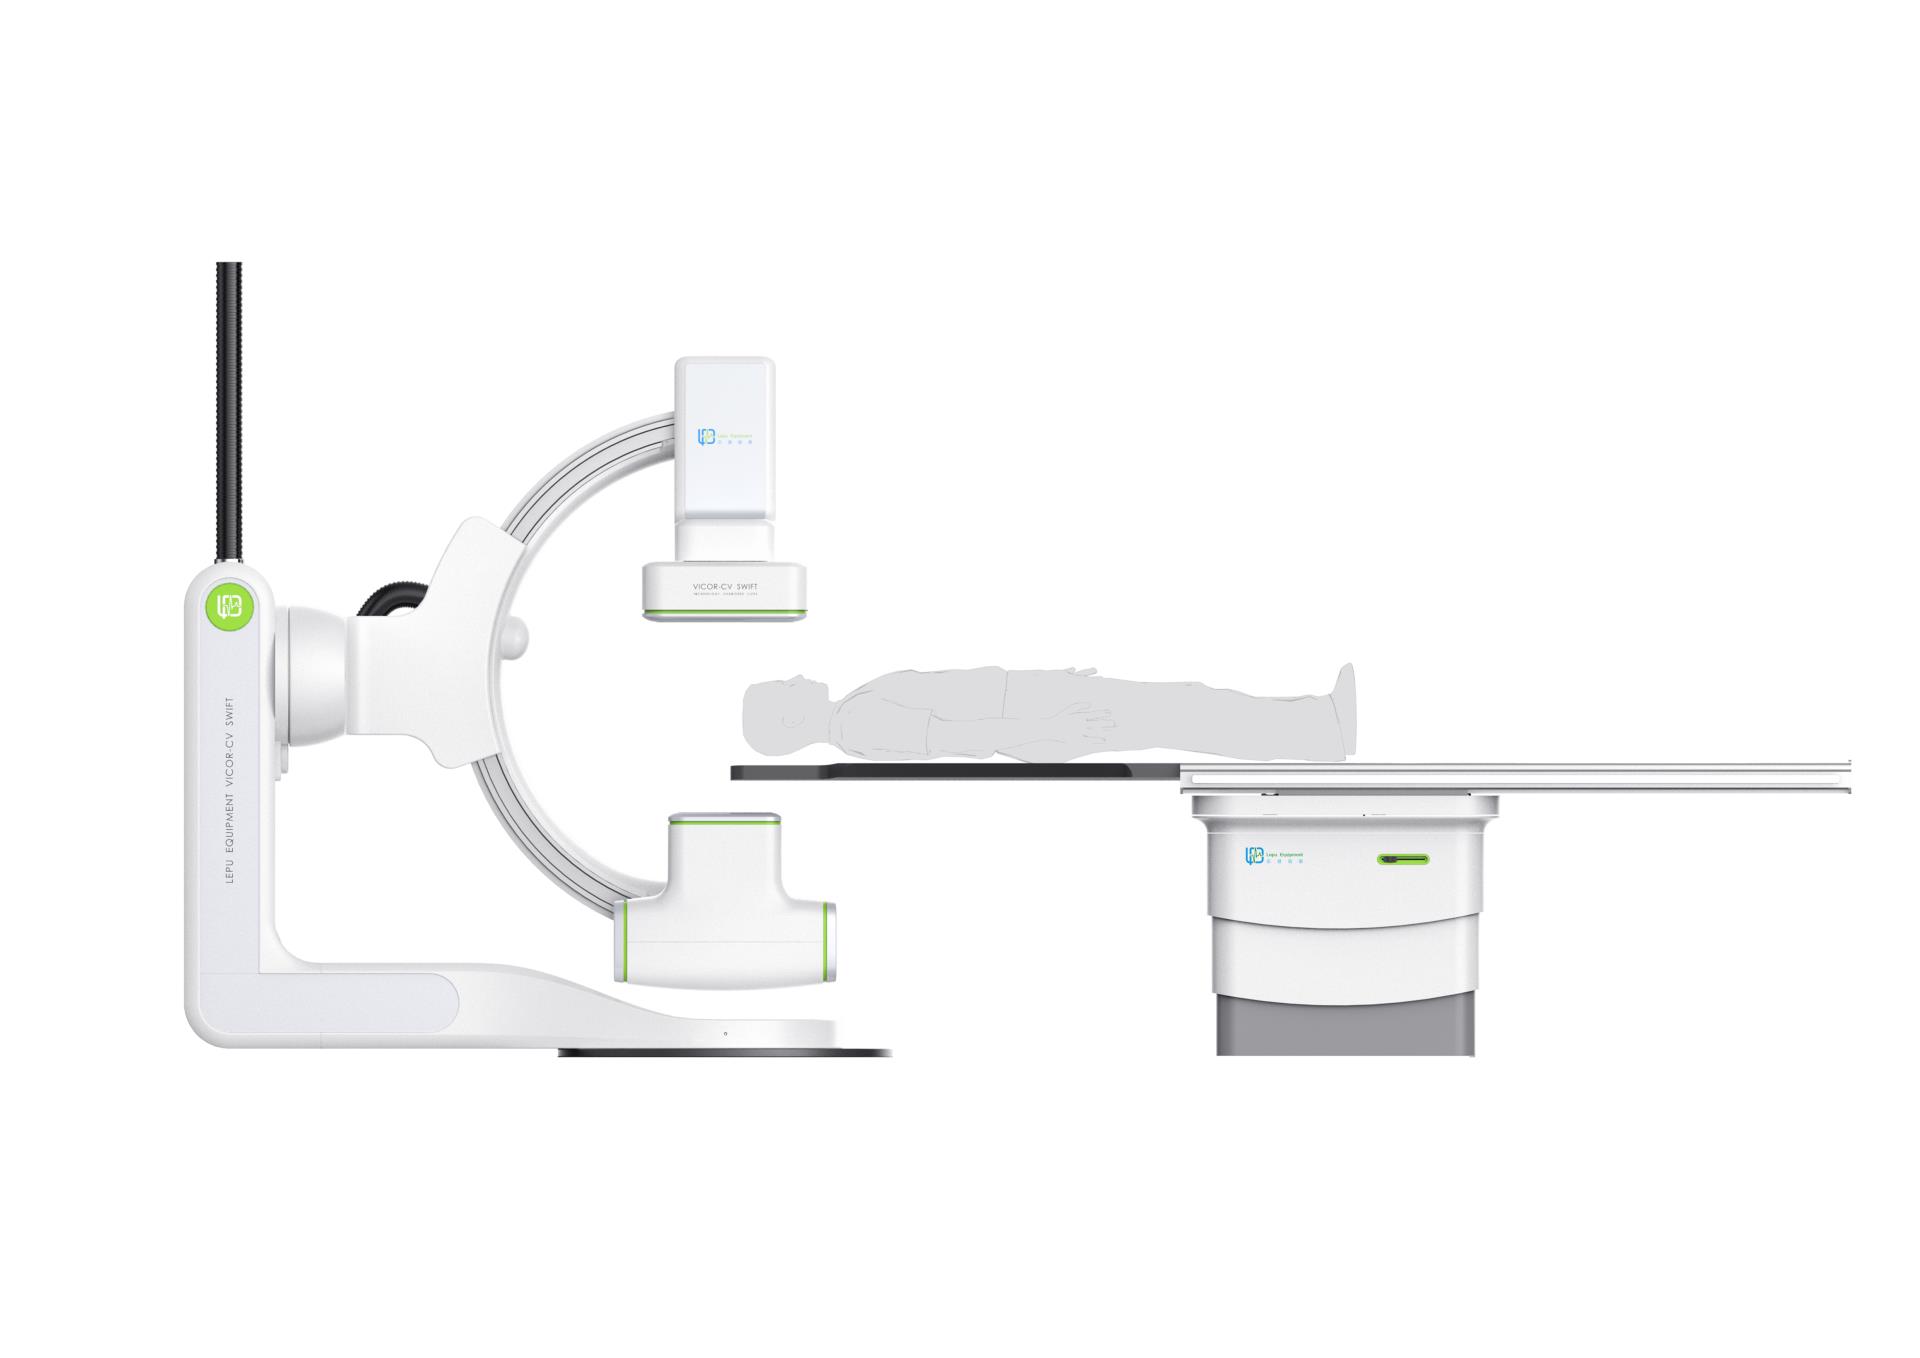 06 - 大尺寸产品图片《乐普医用血管造影X射线机》LEPU AngiographicX-raySystem.jpg